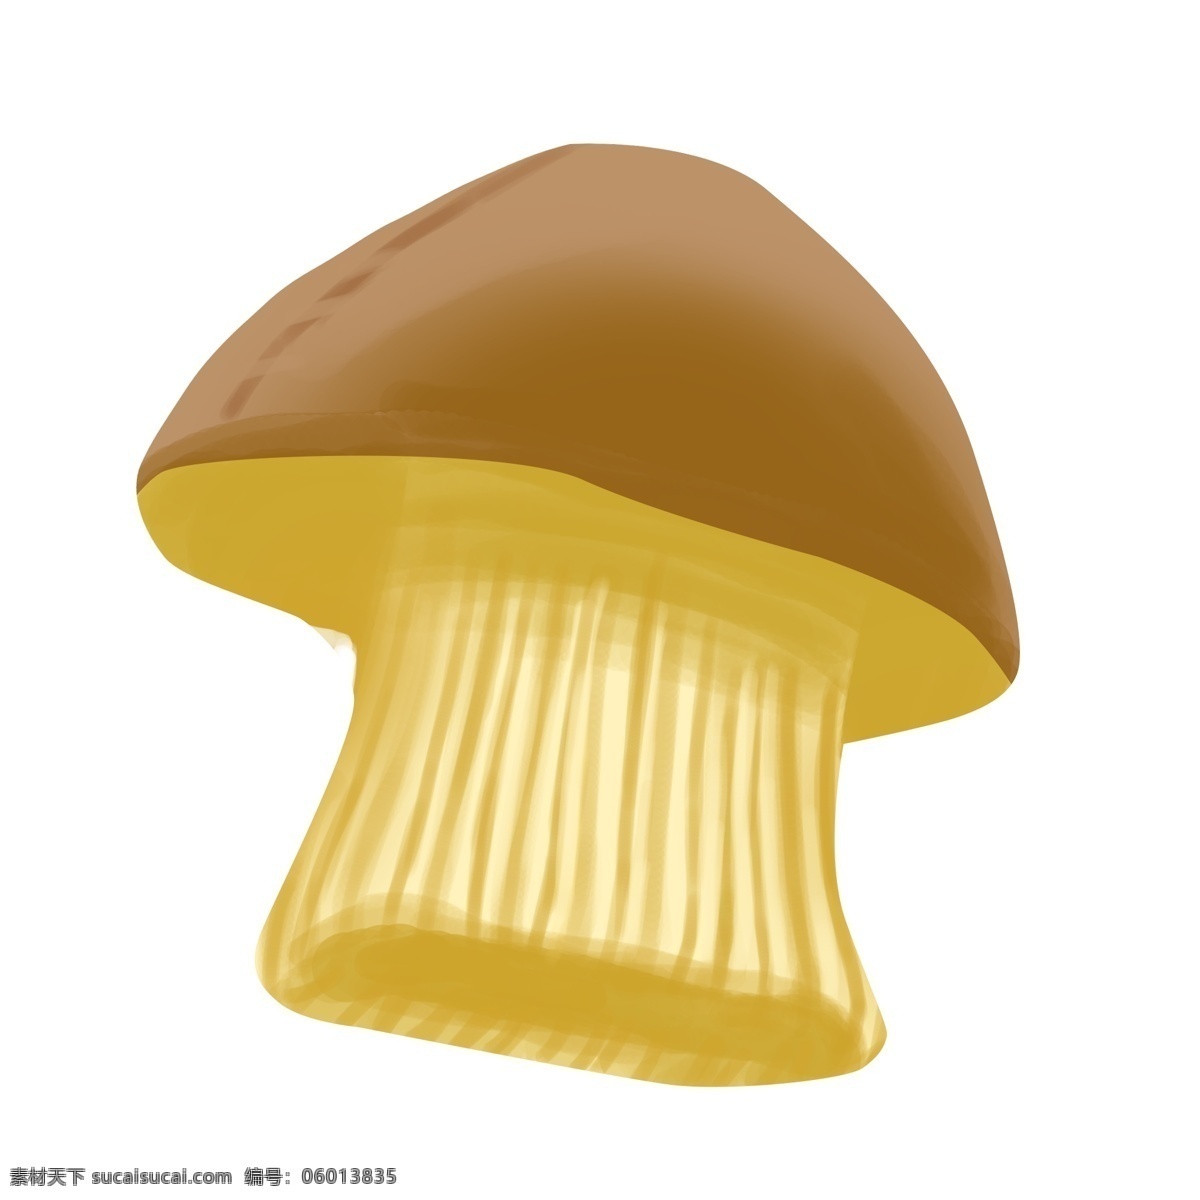 卡通 蘑菇 帽子 插画 蘑菇帽 卡通帽子插画 蔬菜帽子 卡通帽子 创意帽子 蘑菇造型帽子 帽子插画